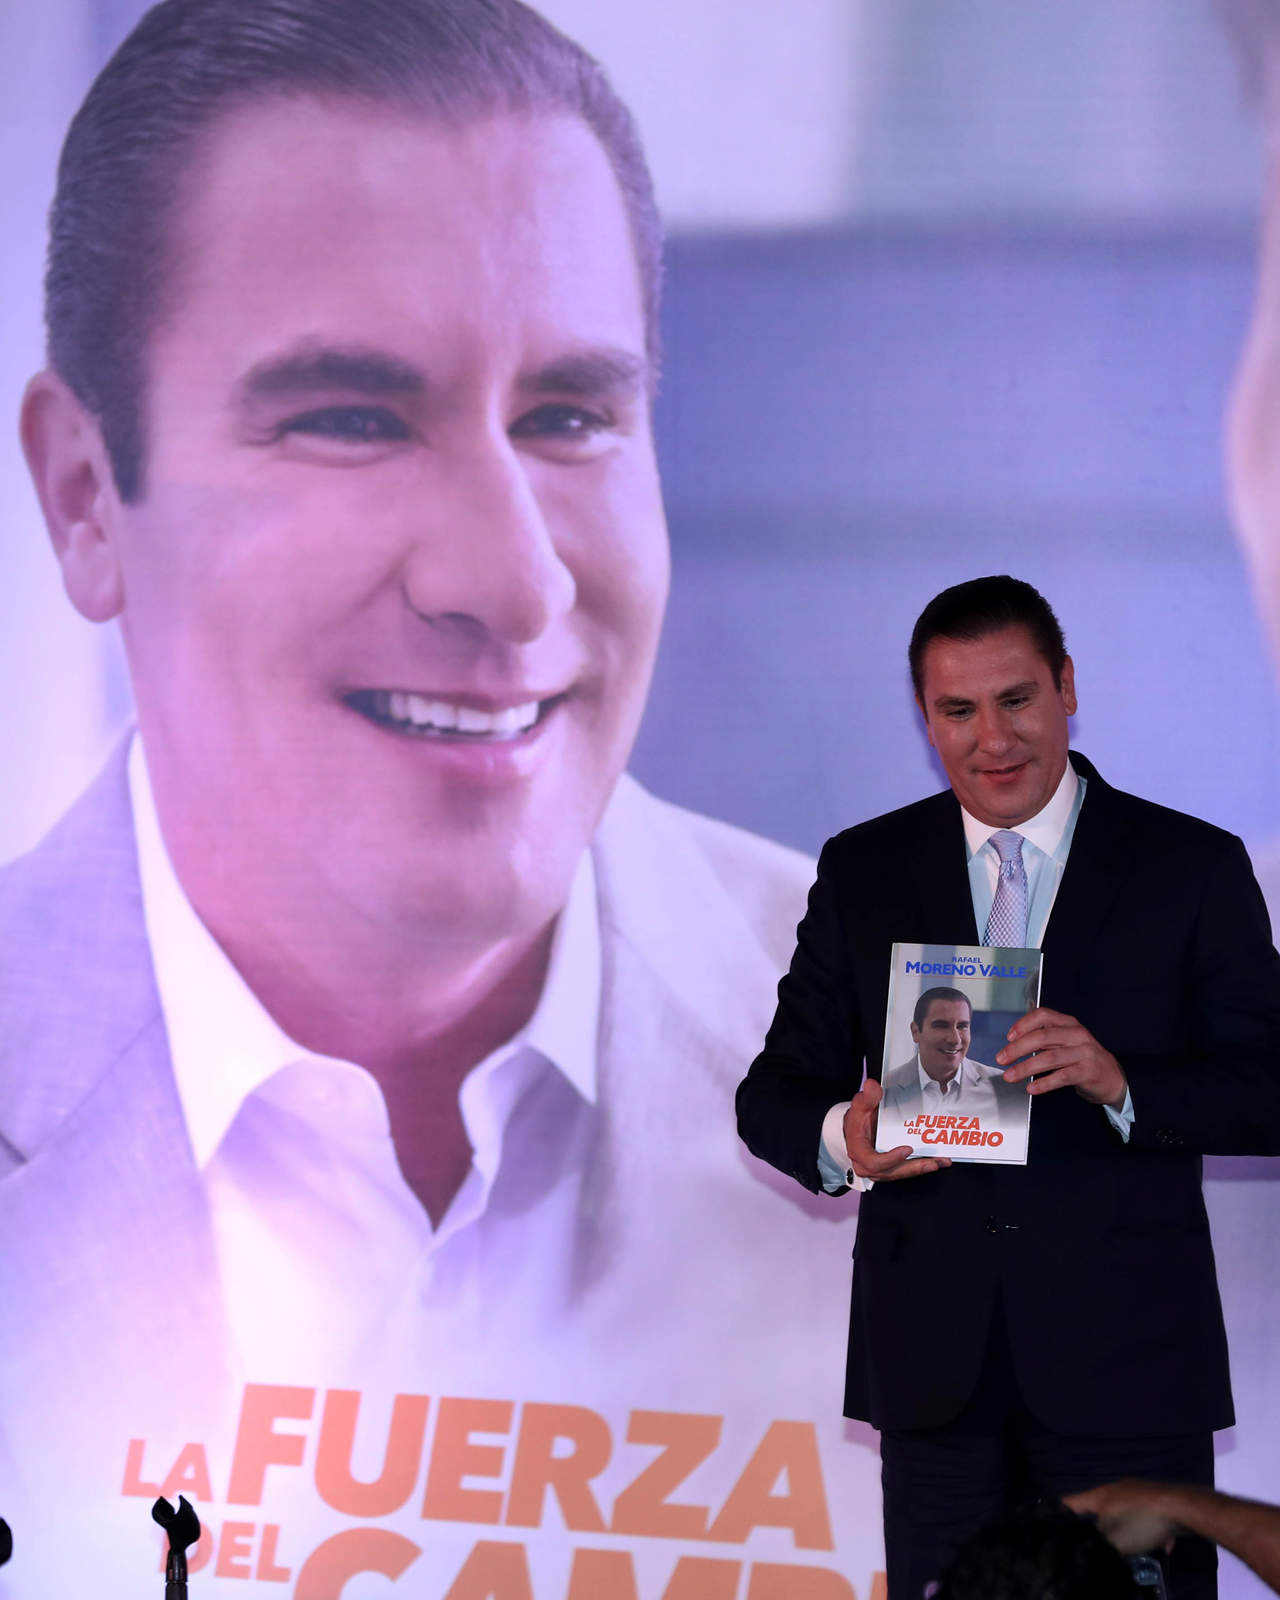 En un comunicado, la casa editorial Porrúa aseguró no tener ningún vínculo en la realización del libro 'La Fuerza del Cambio' del ex gobernador de Puebla, Rafael Moreno Valle. (ARCHIVO)